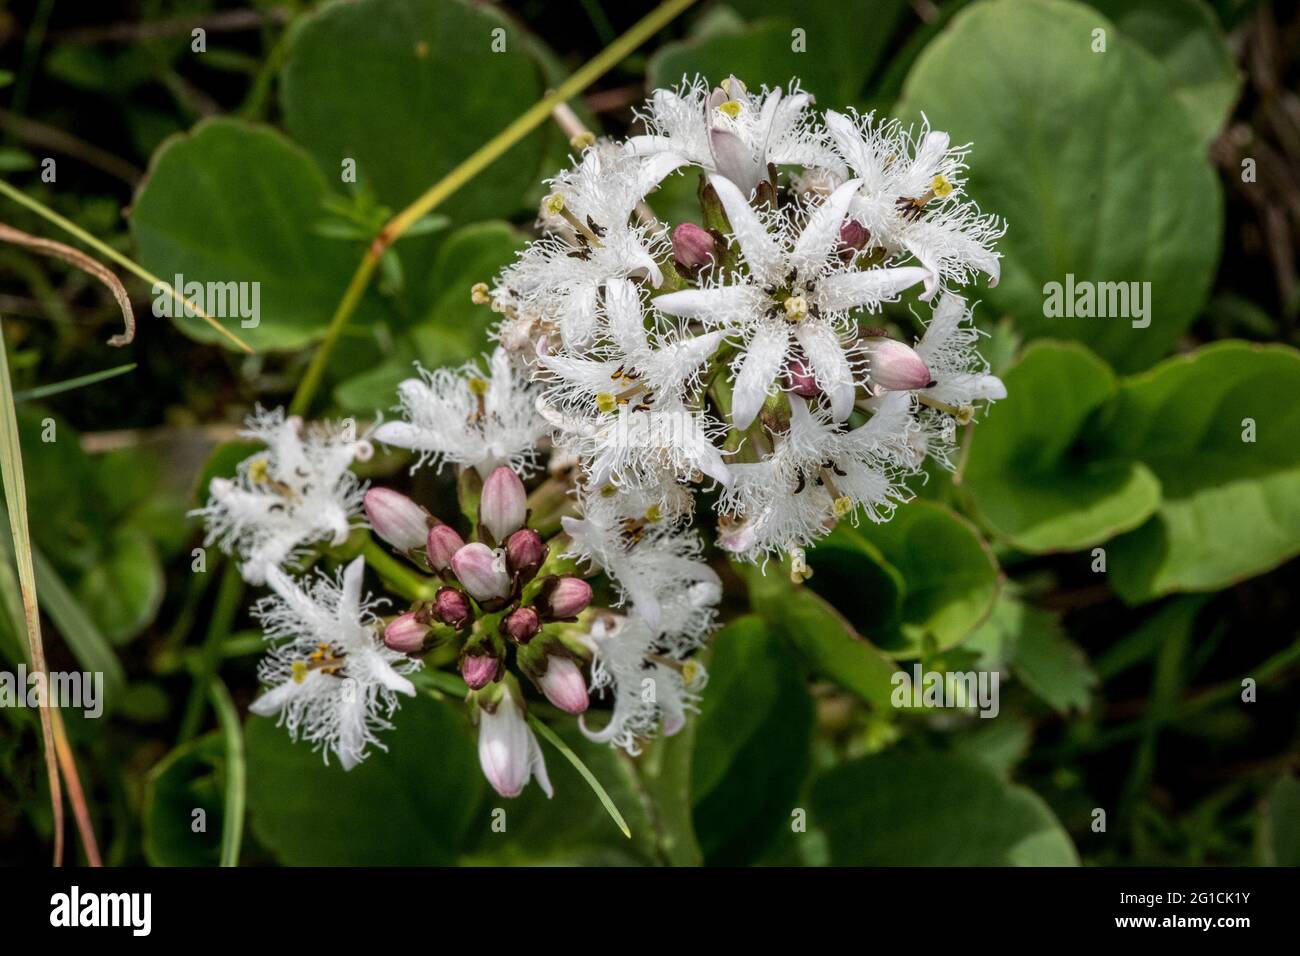 Menyanthes trifoliata or Bogbean Stock Photo